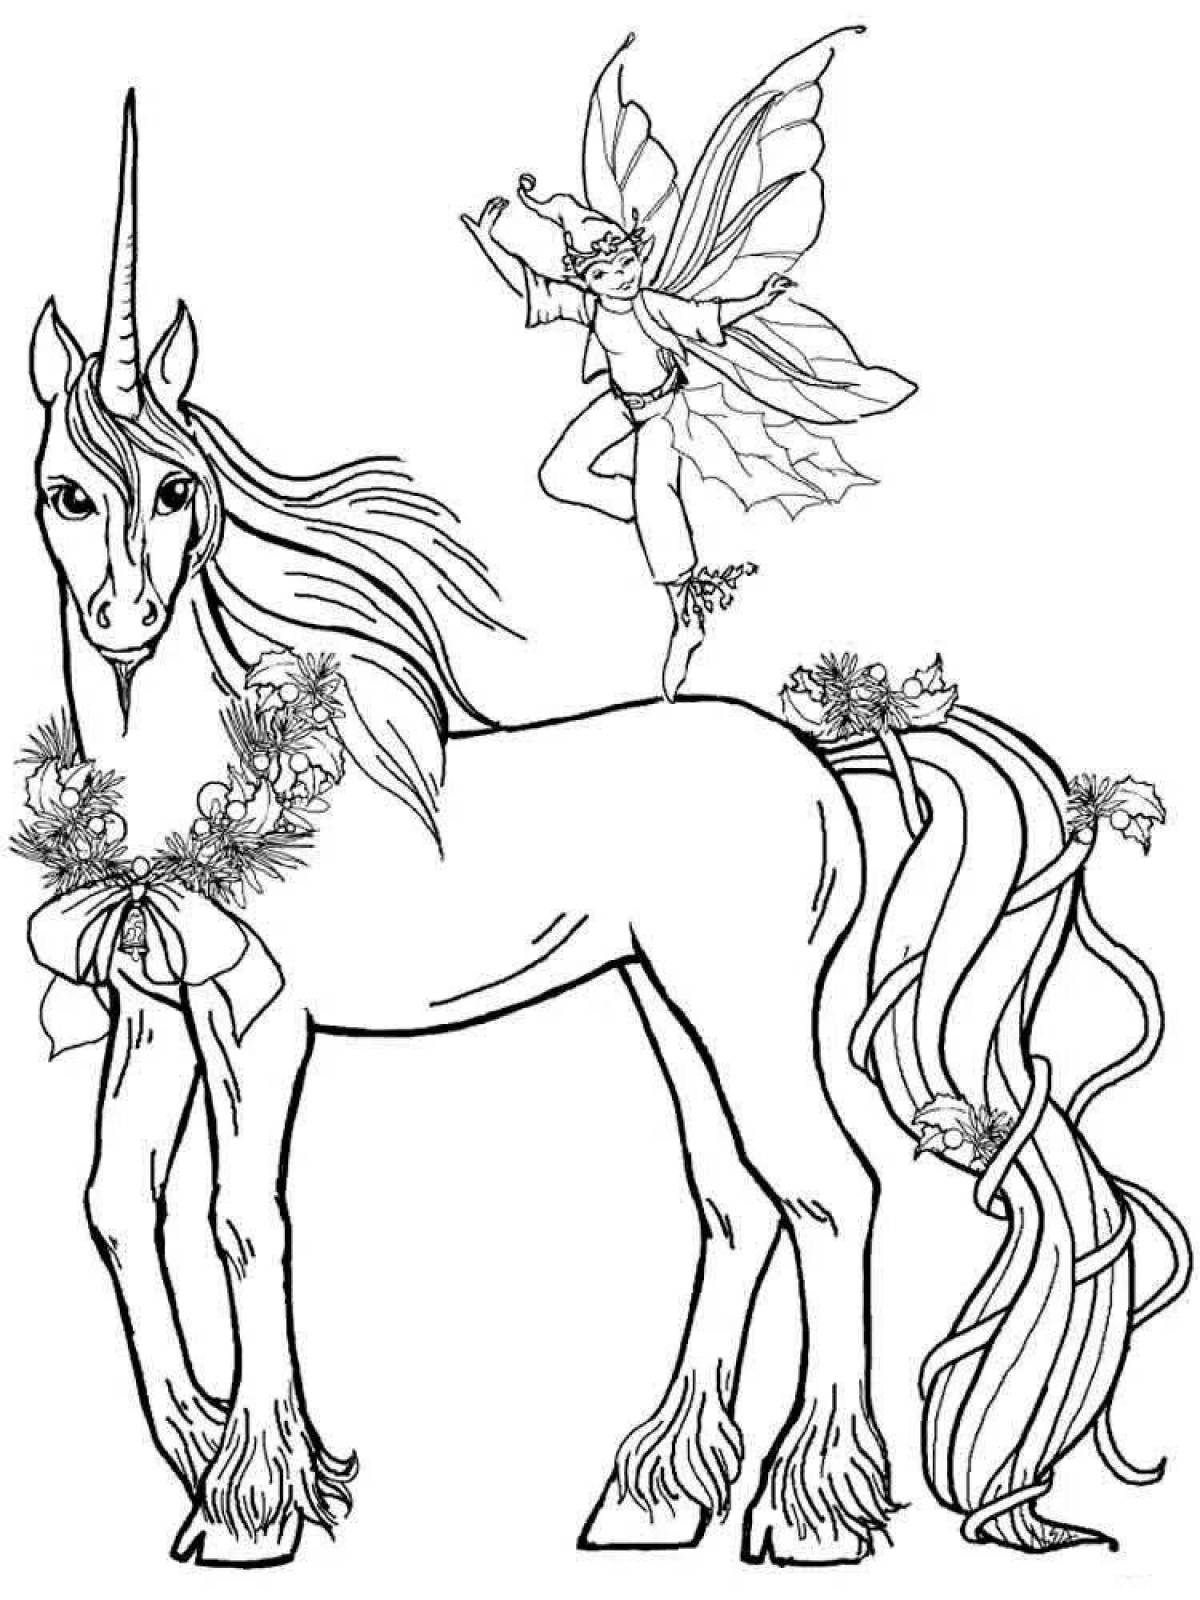 Serene unicorn coloring book